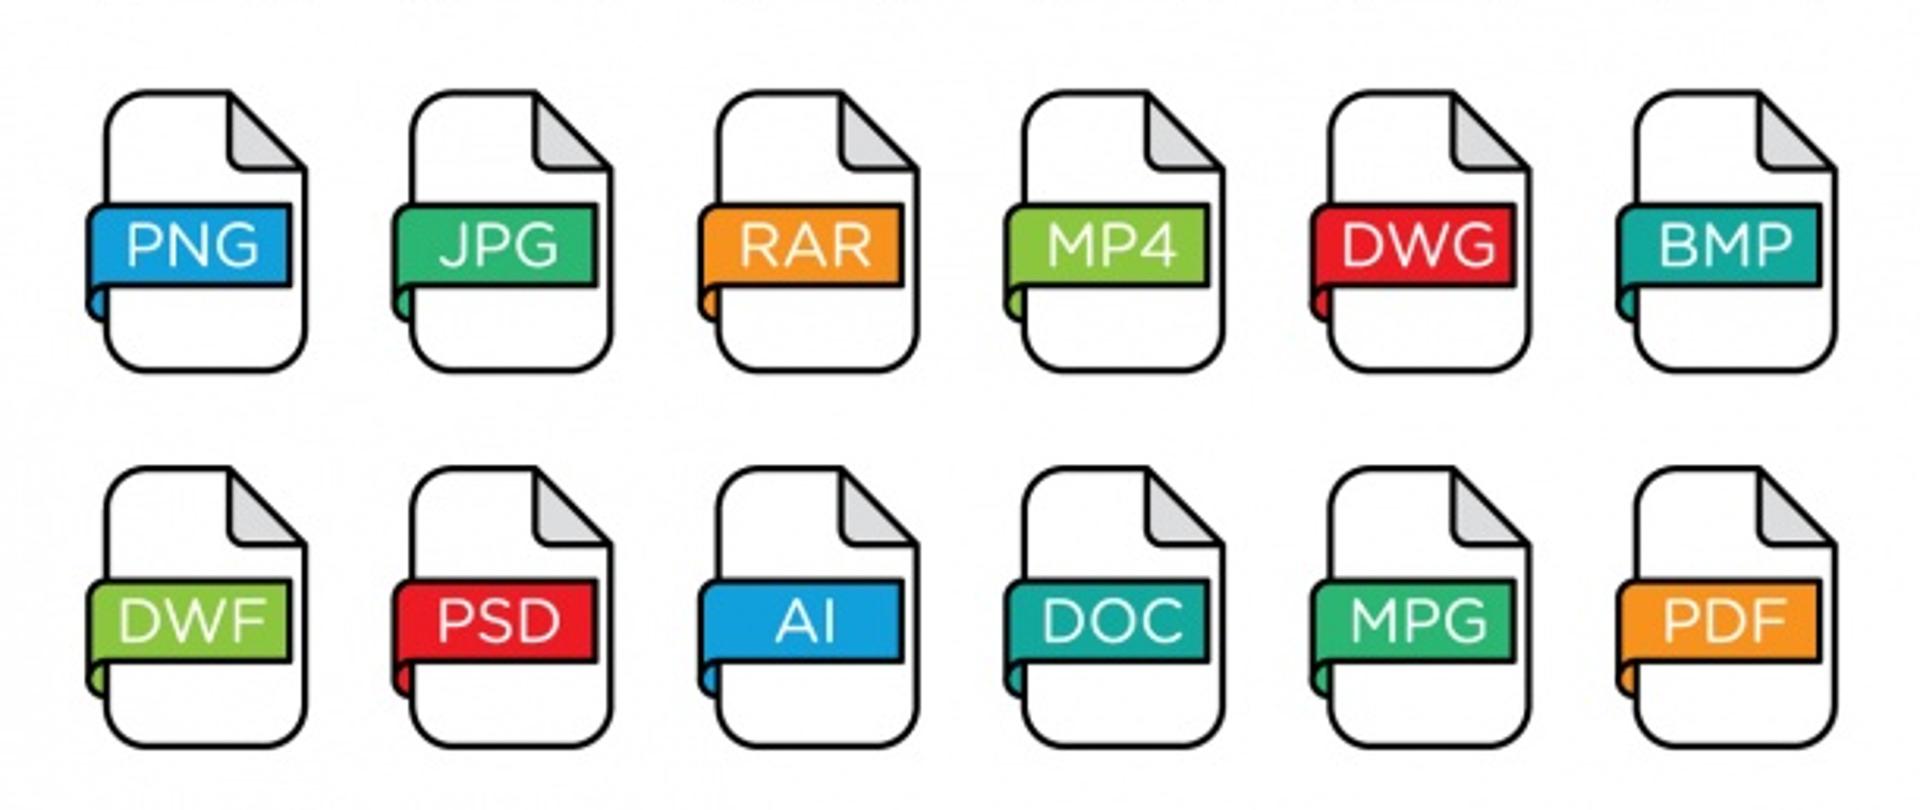 Zdjęcie przedstawia ikony plików różnych formatów